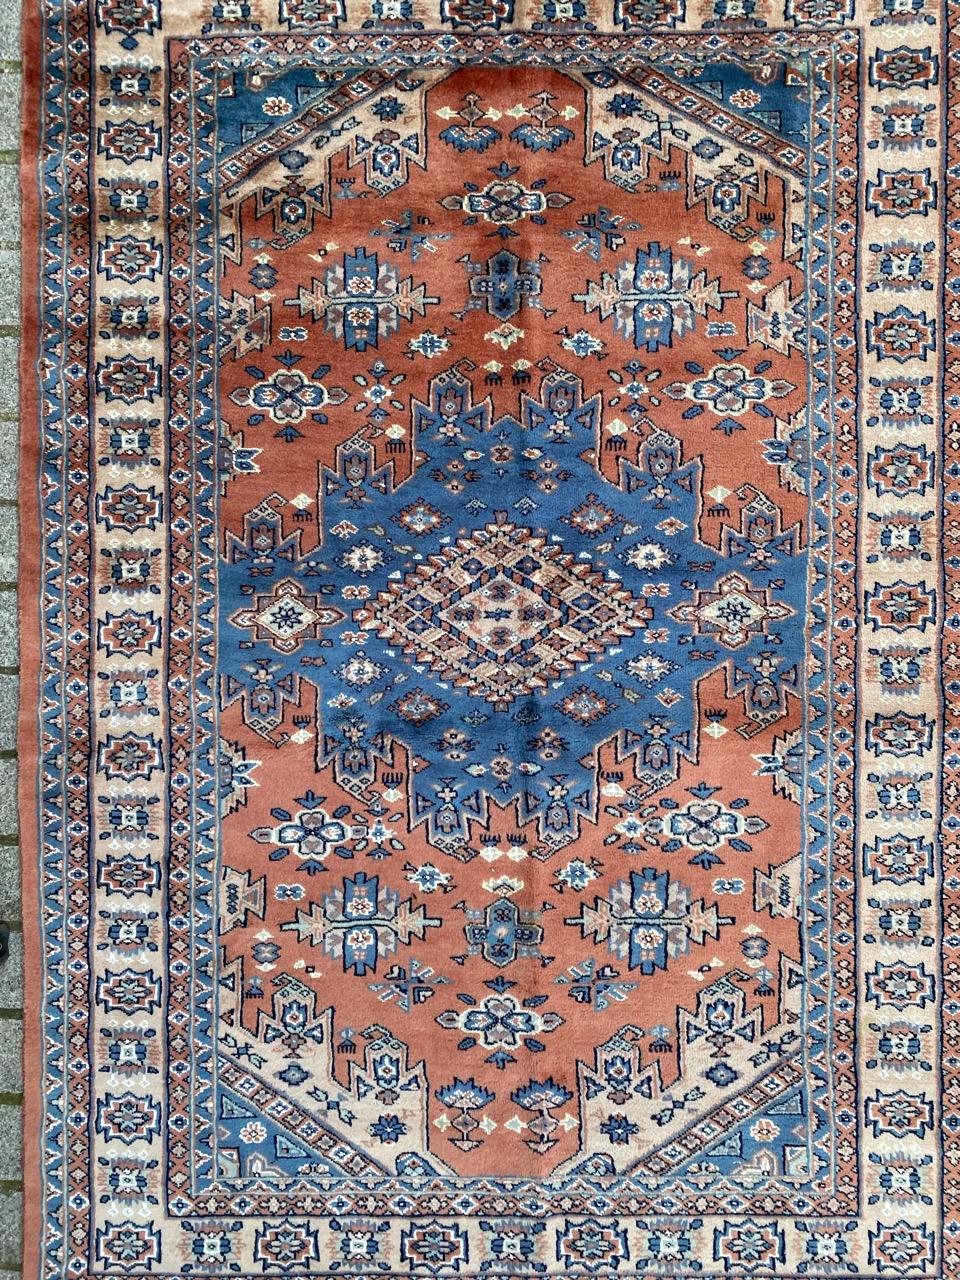 Schöner Teppich aus der Mitte des Jahrhunderts mit schönem geometrischem Design und schönen Farben, komplett handgeknüpft mit Wollsamt auf Baumwollbasis.

✨✨✨
